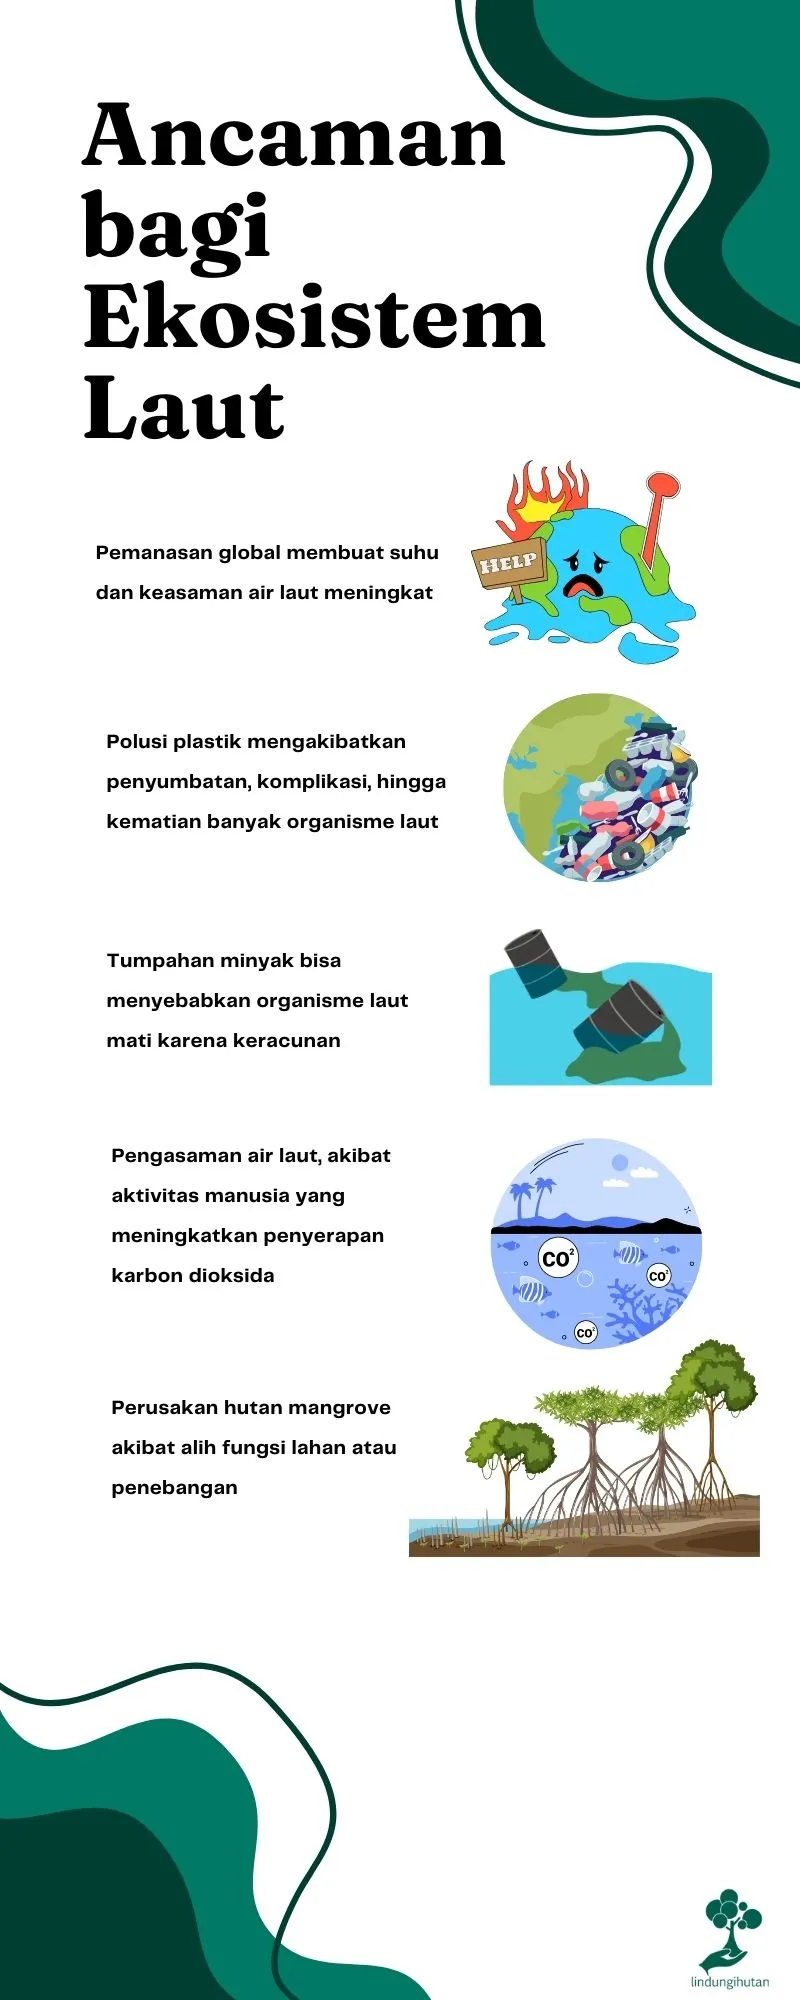 Ancaman terbesar bagi ekosistem laut